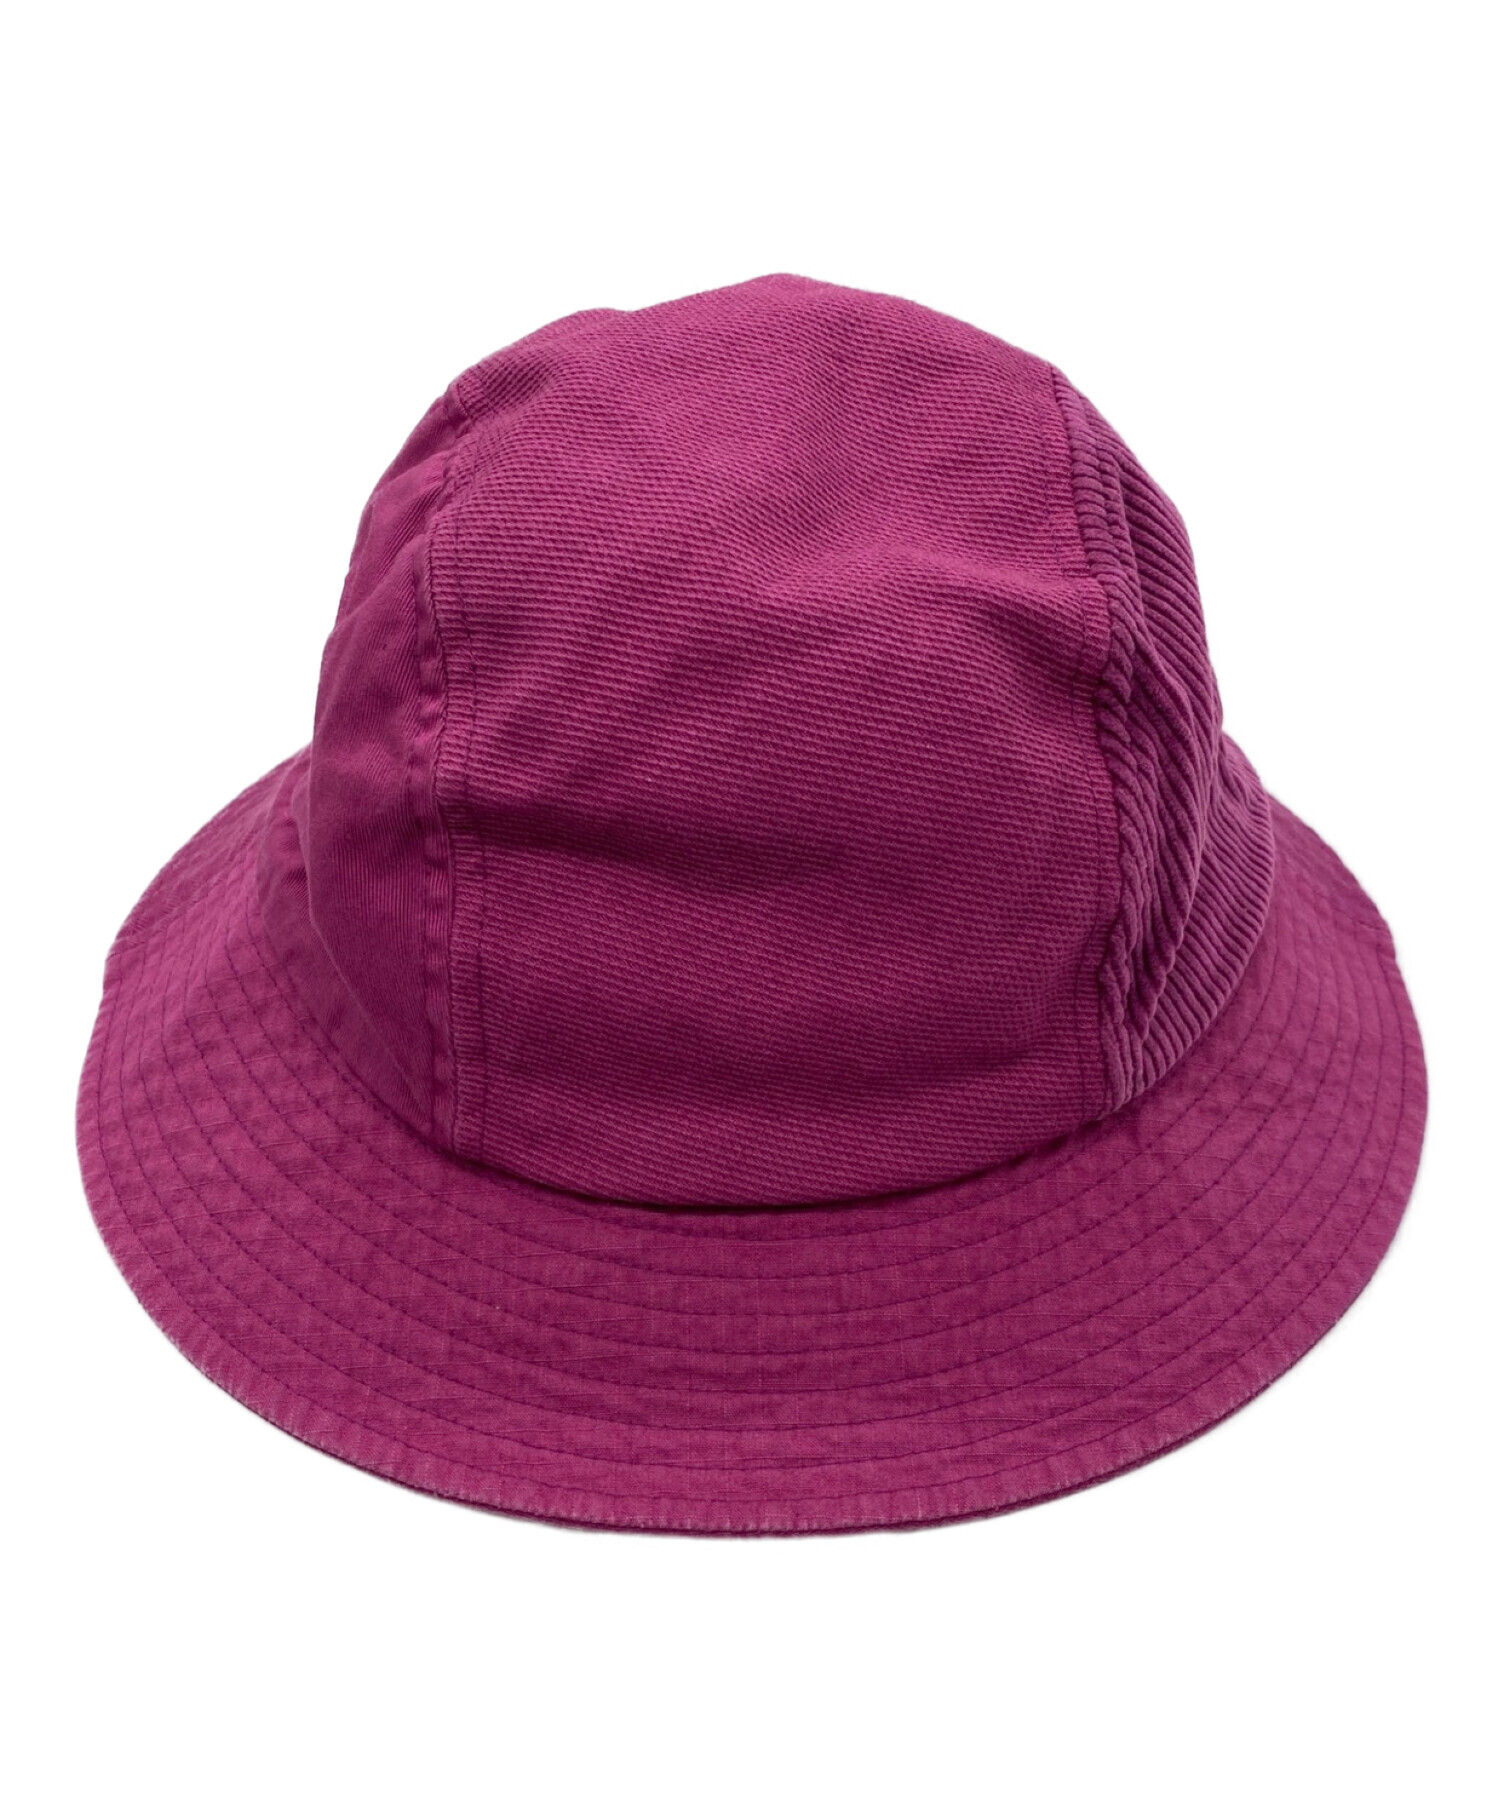 KIJIMA TAKAYUKI キジマタカユキ ハンチング・ベレー帽 1 ピンク